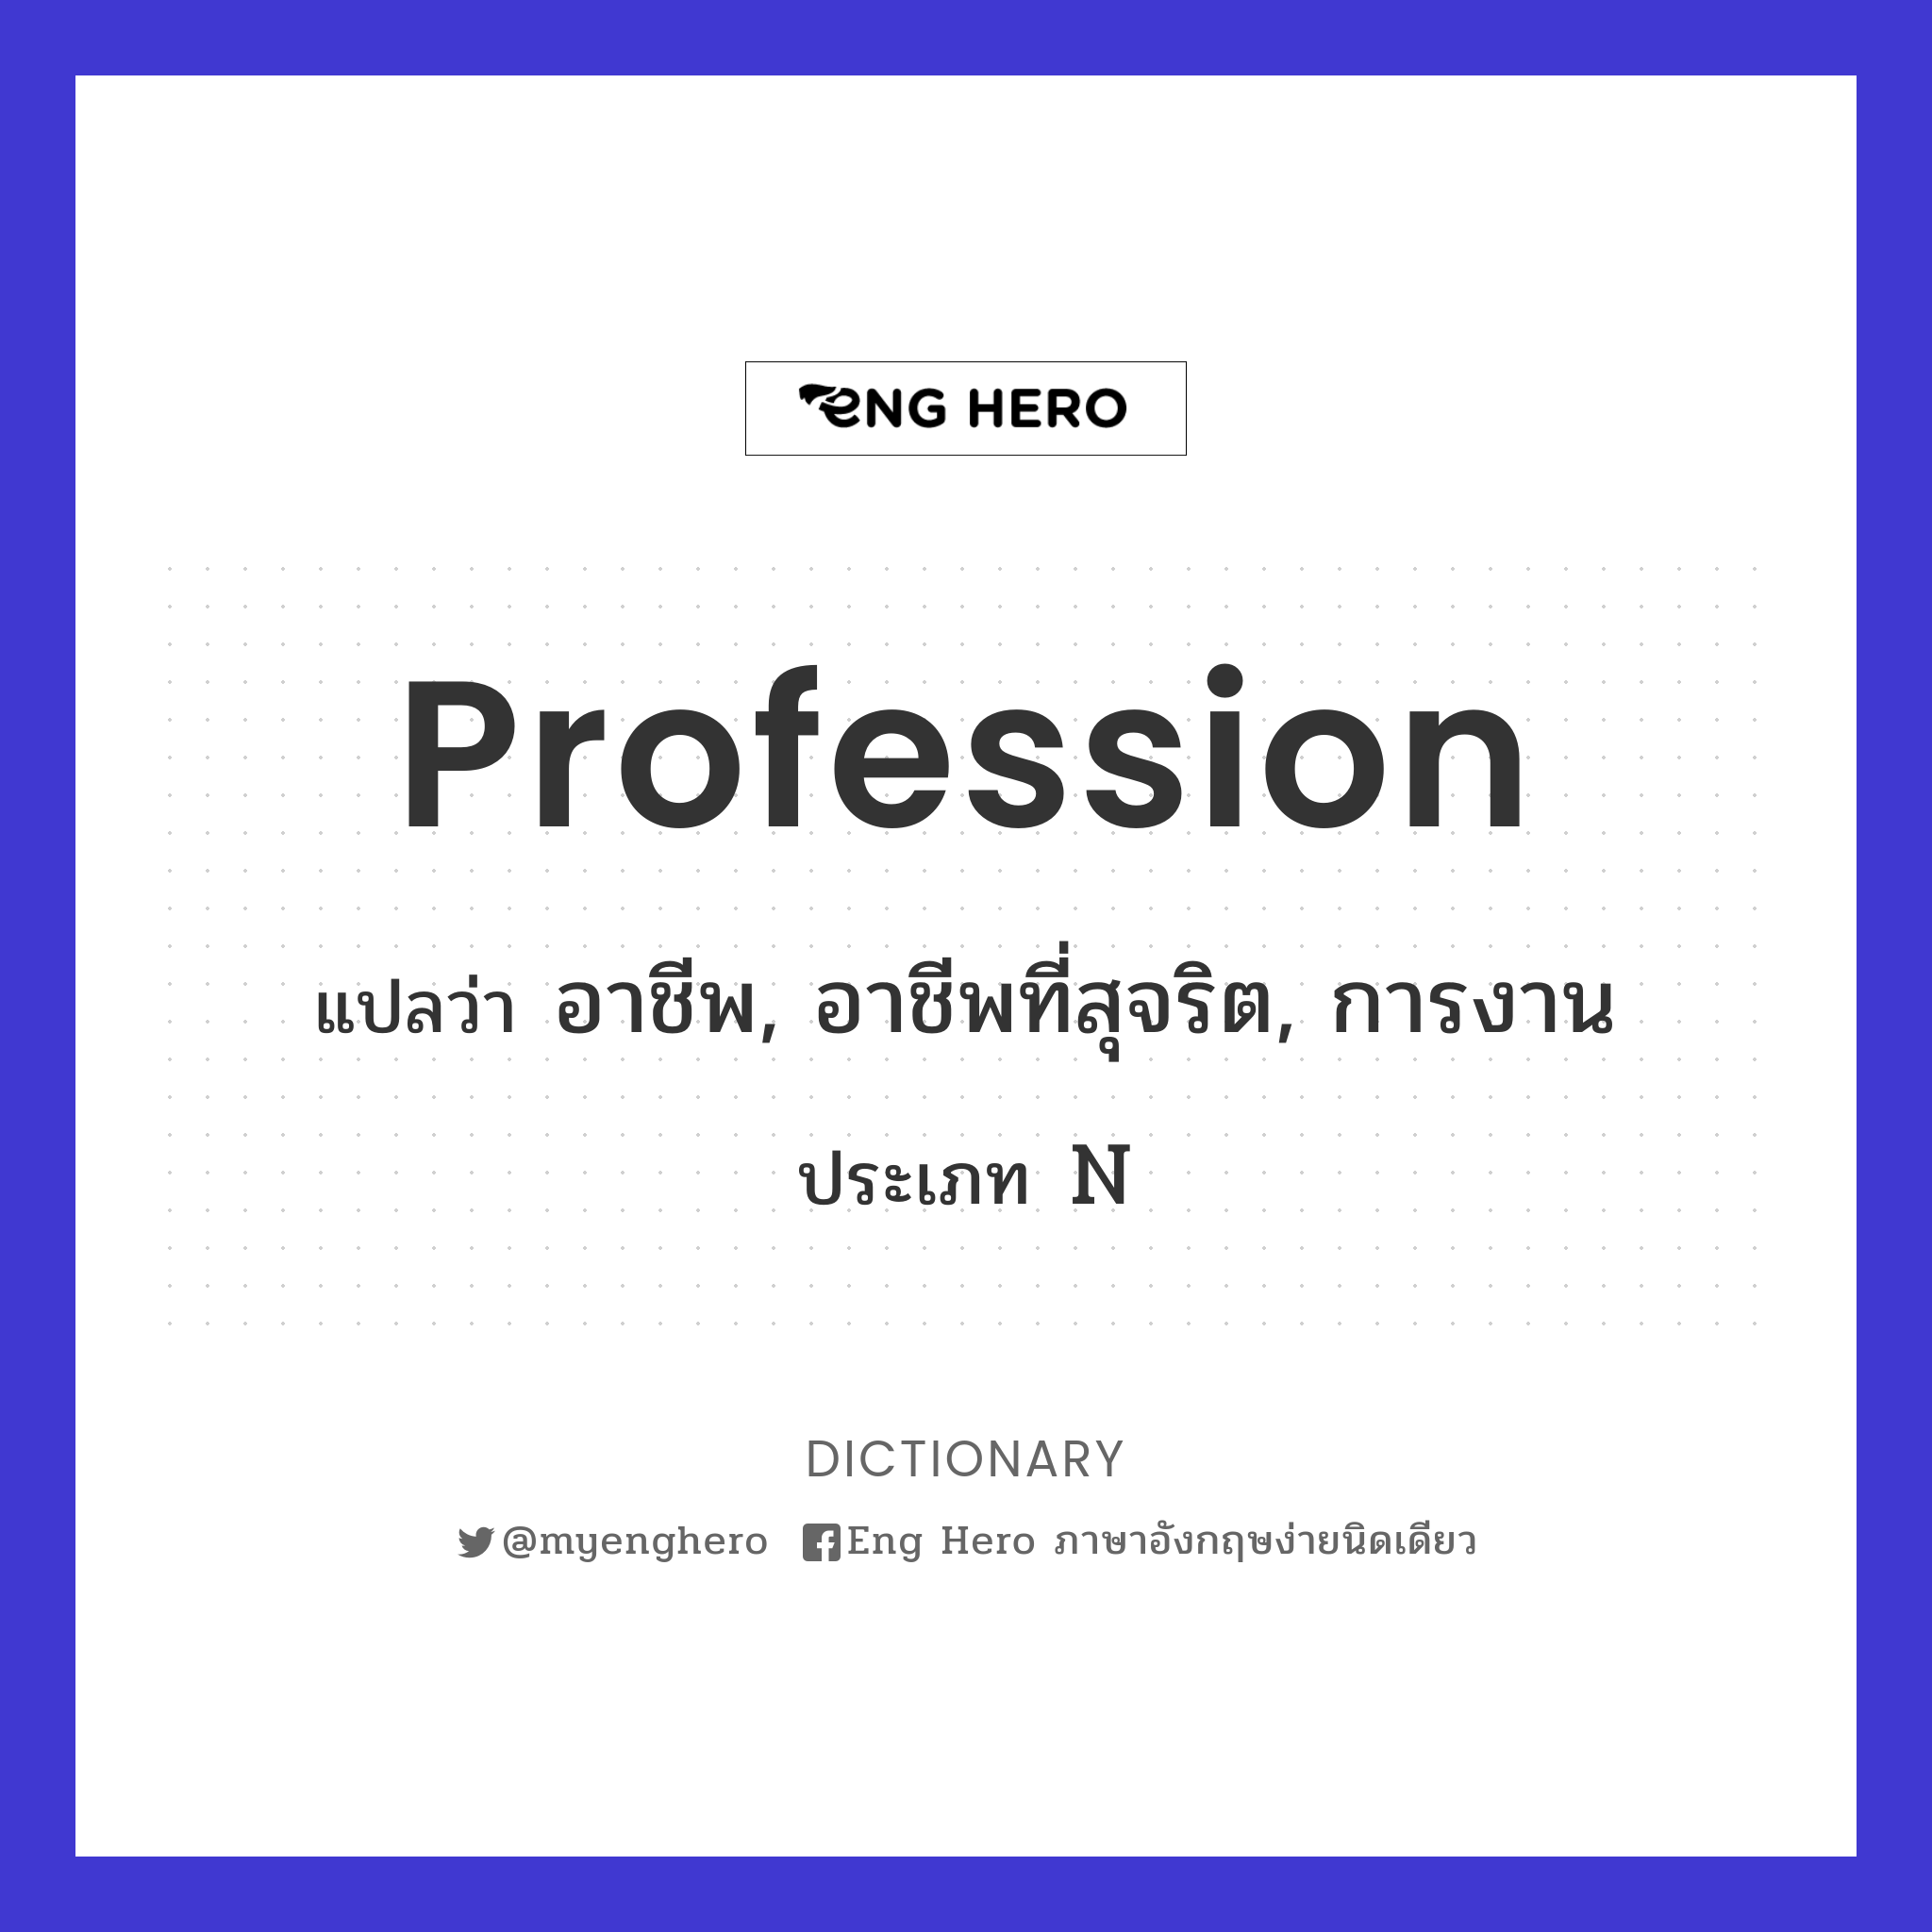 profession